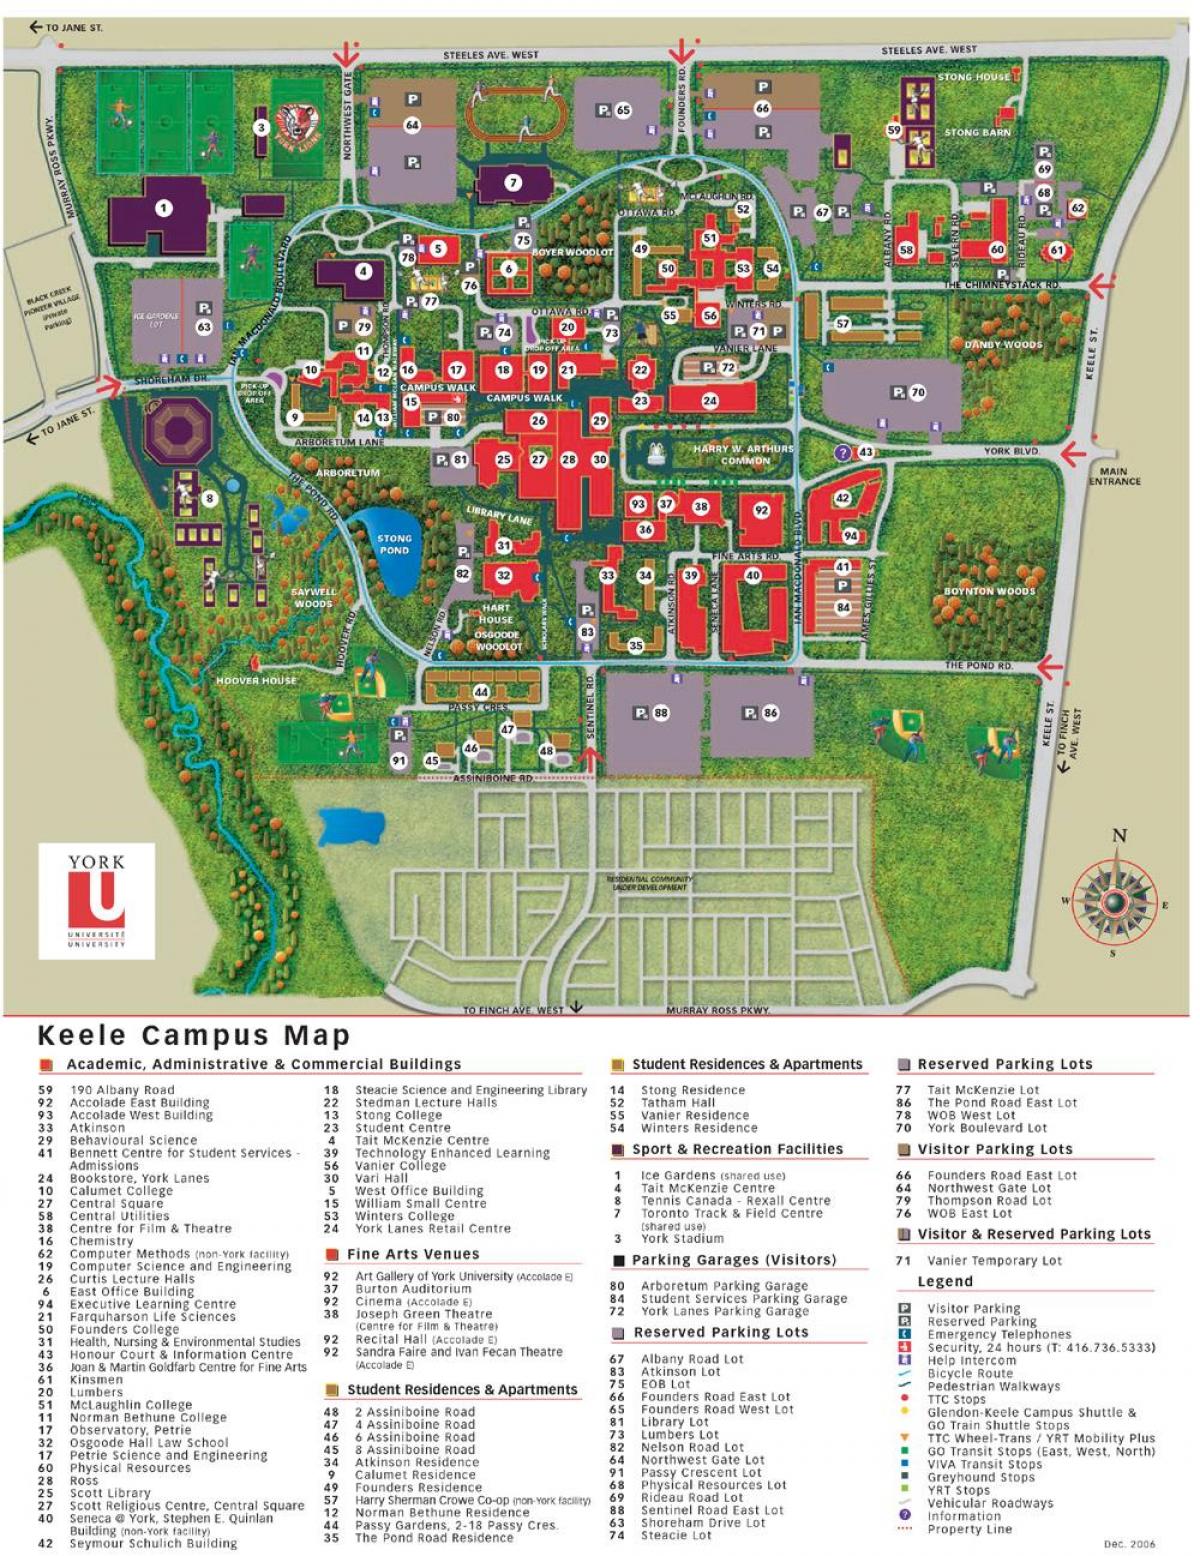 Peta dari York university keele kampus